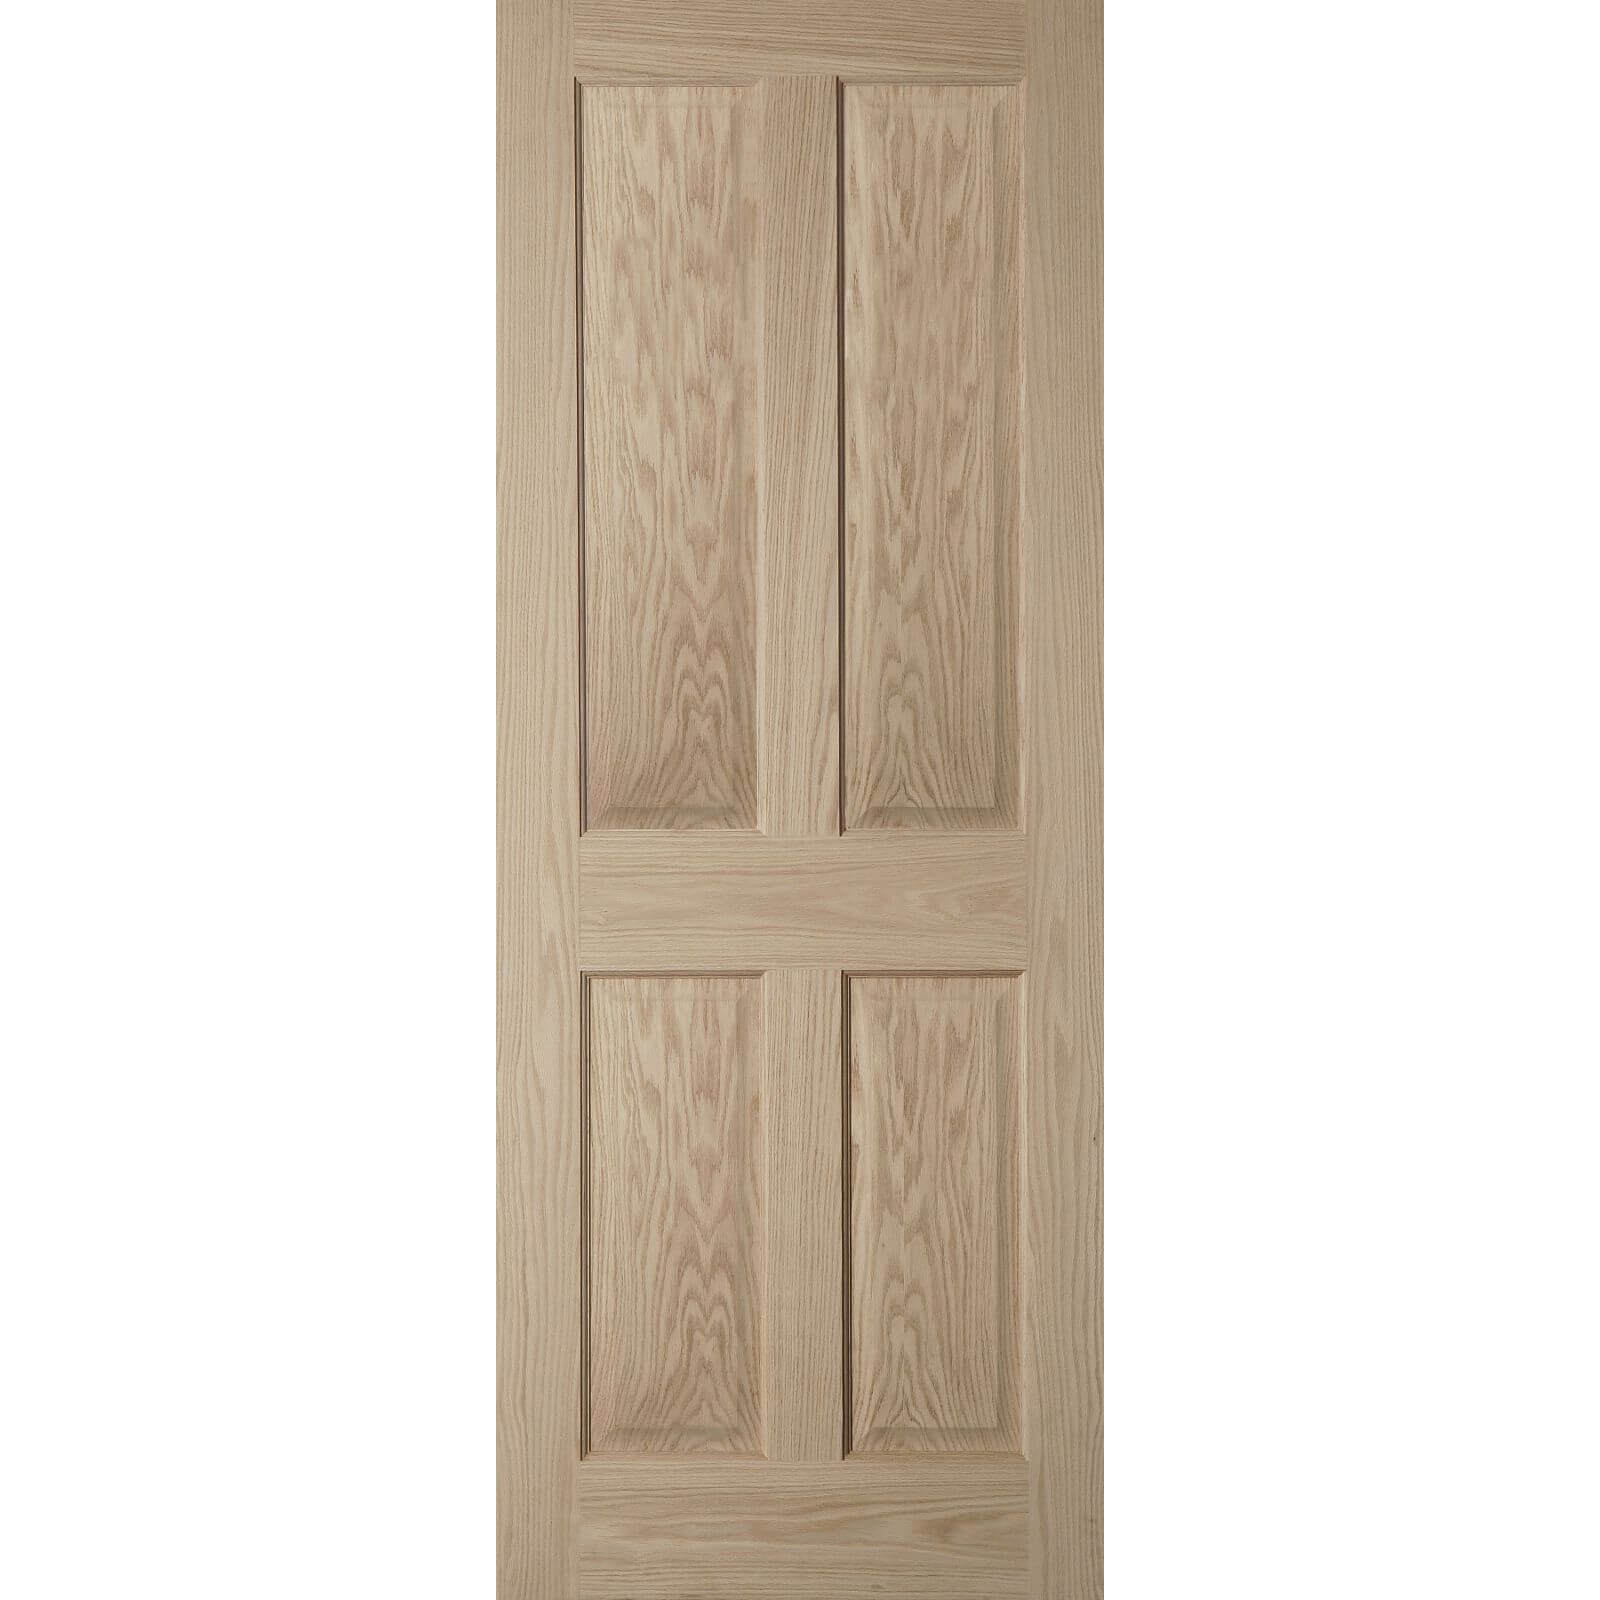 4 Panel Oak Veneer Fire Door - 726mm Wide